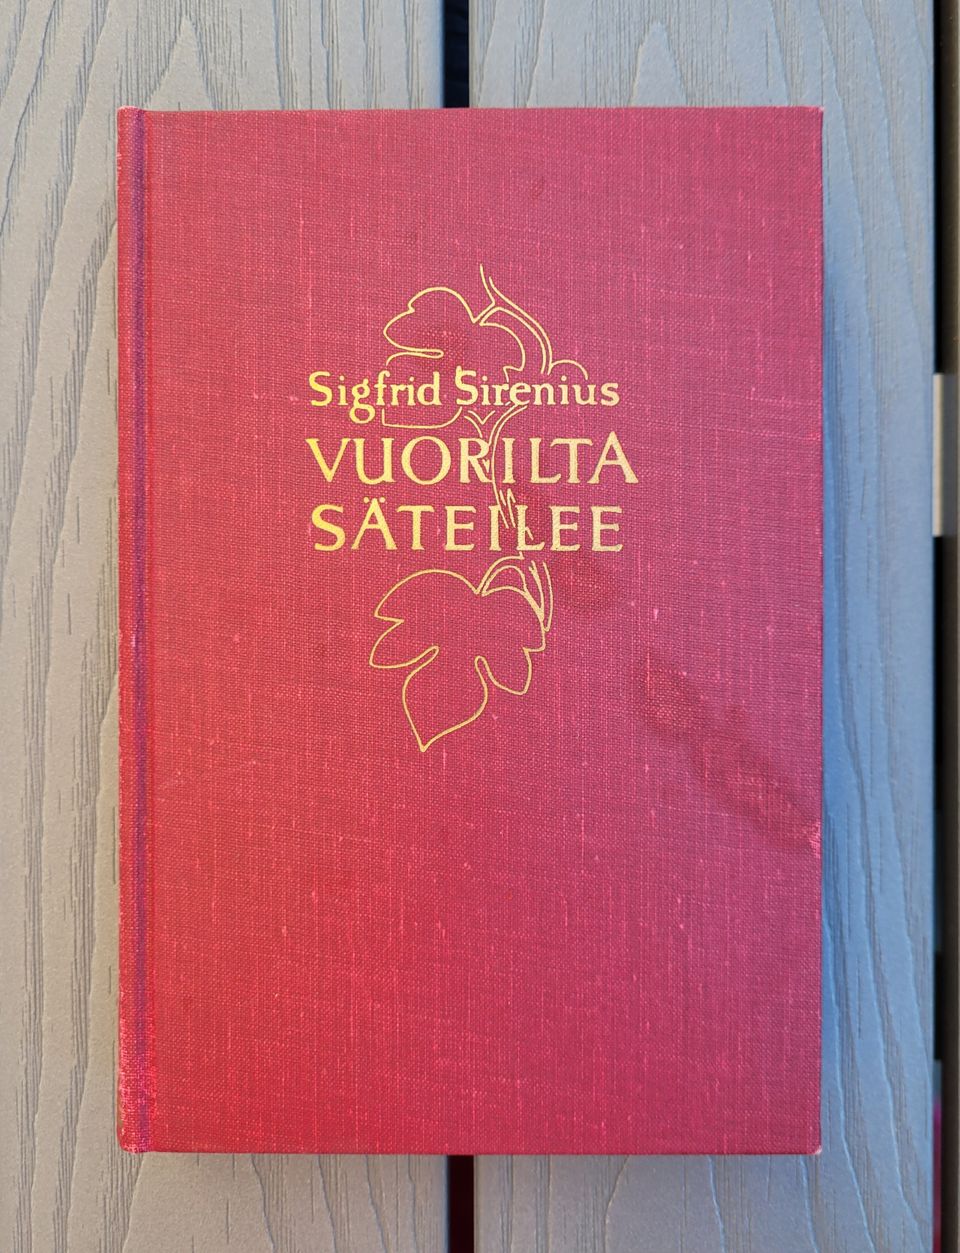 Sigfrid Sirenius: Vuorilta säteilee (1956)